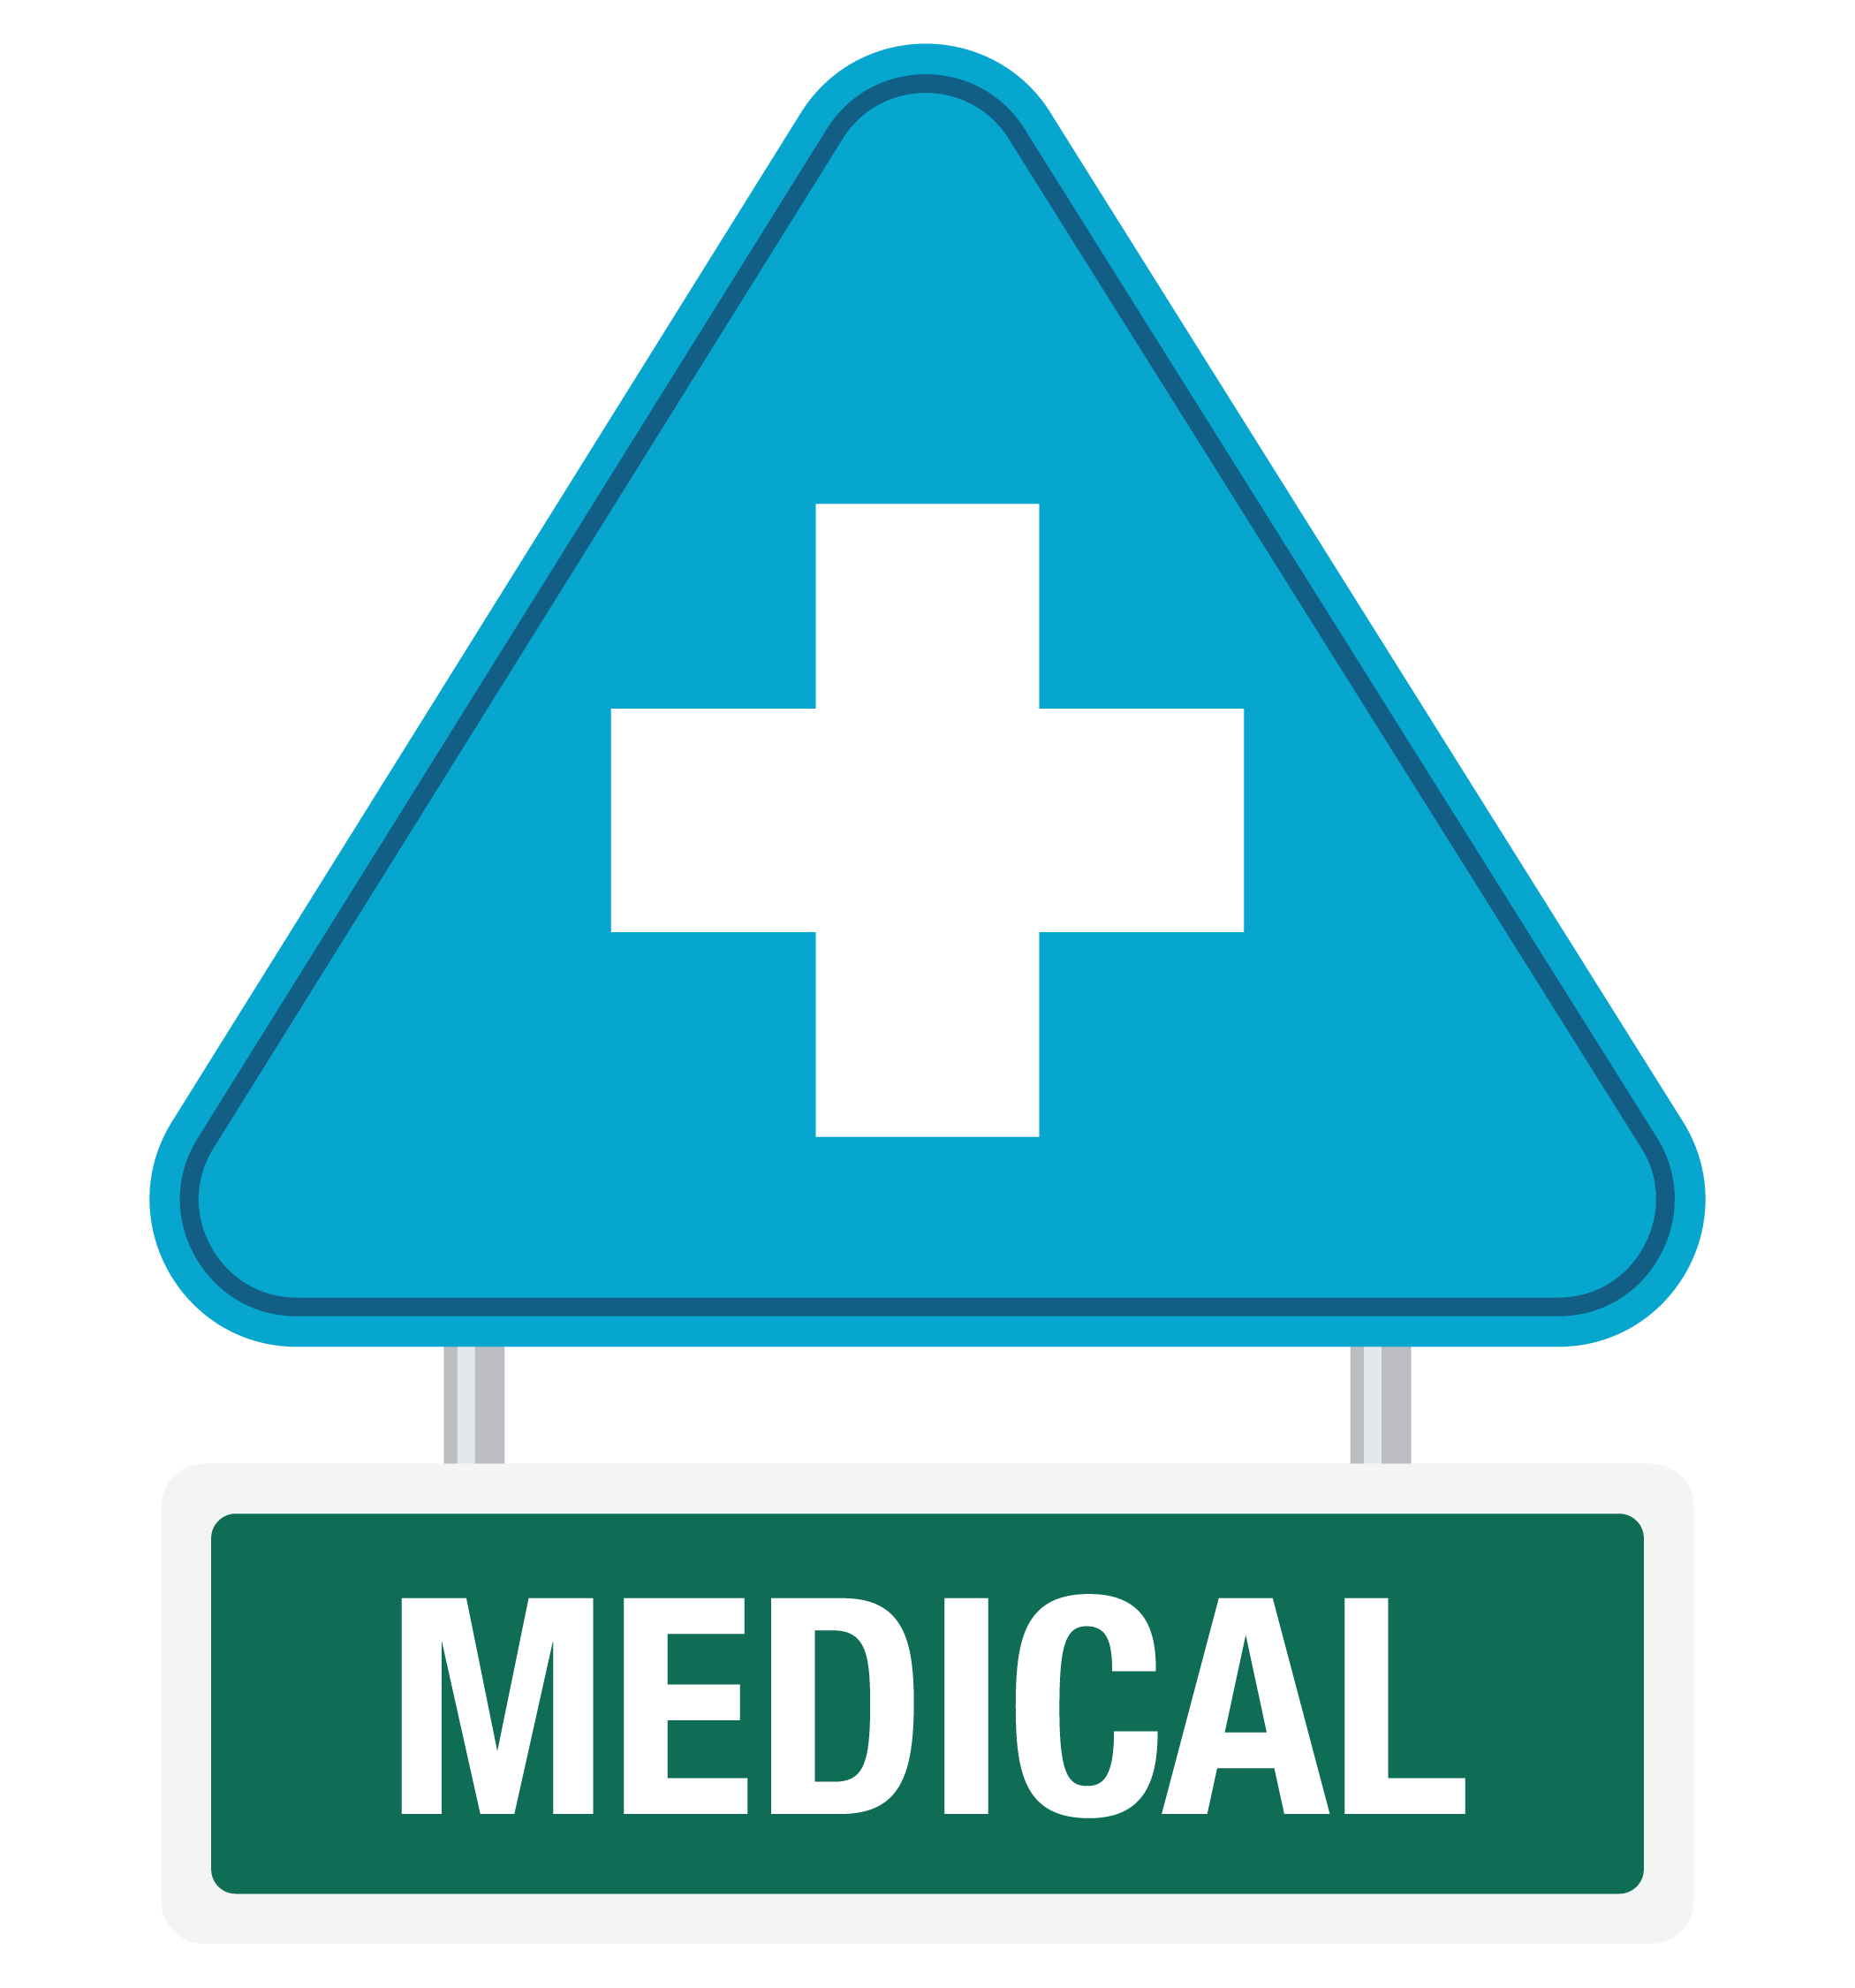 Medical Plans. Click here for details